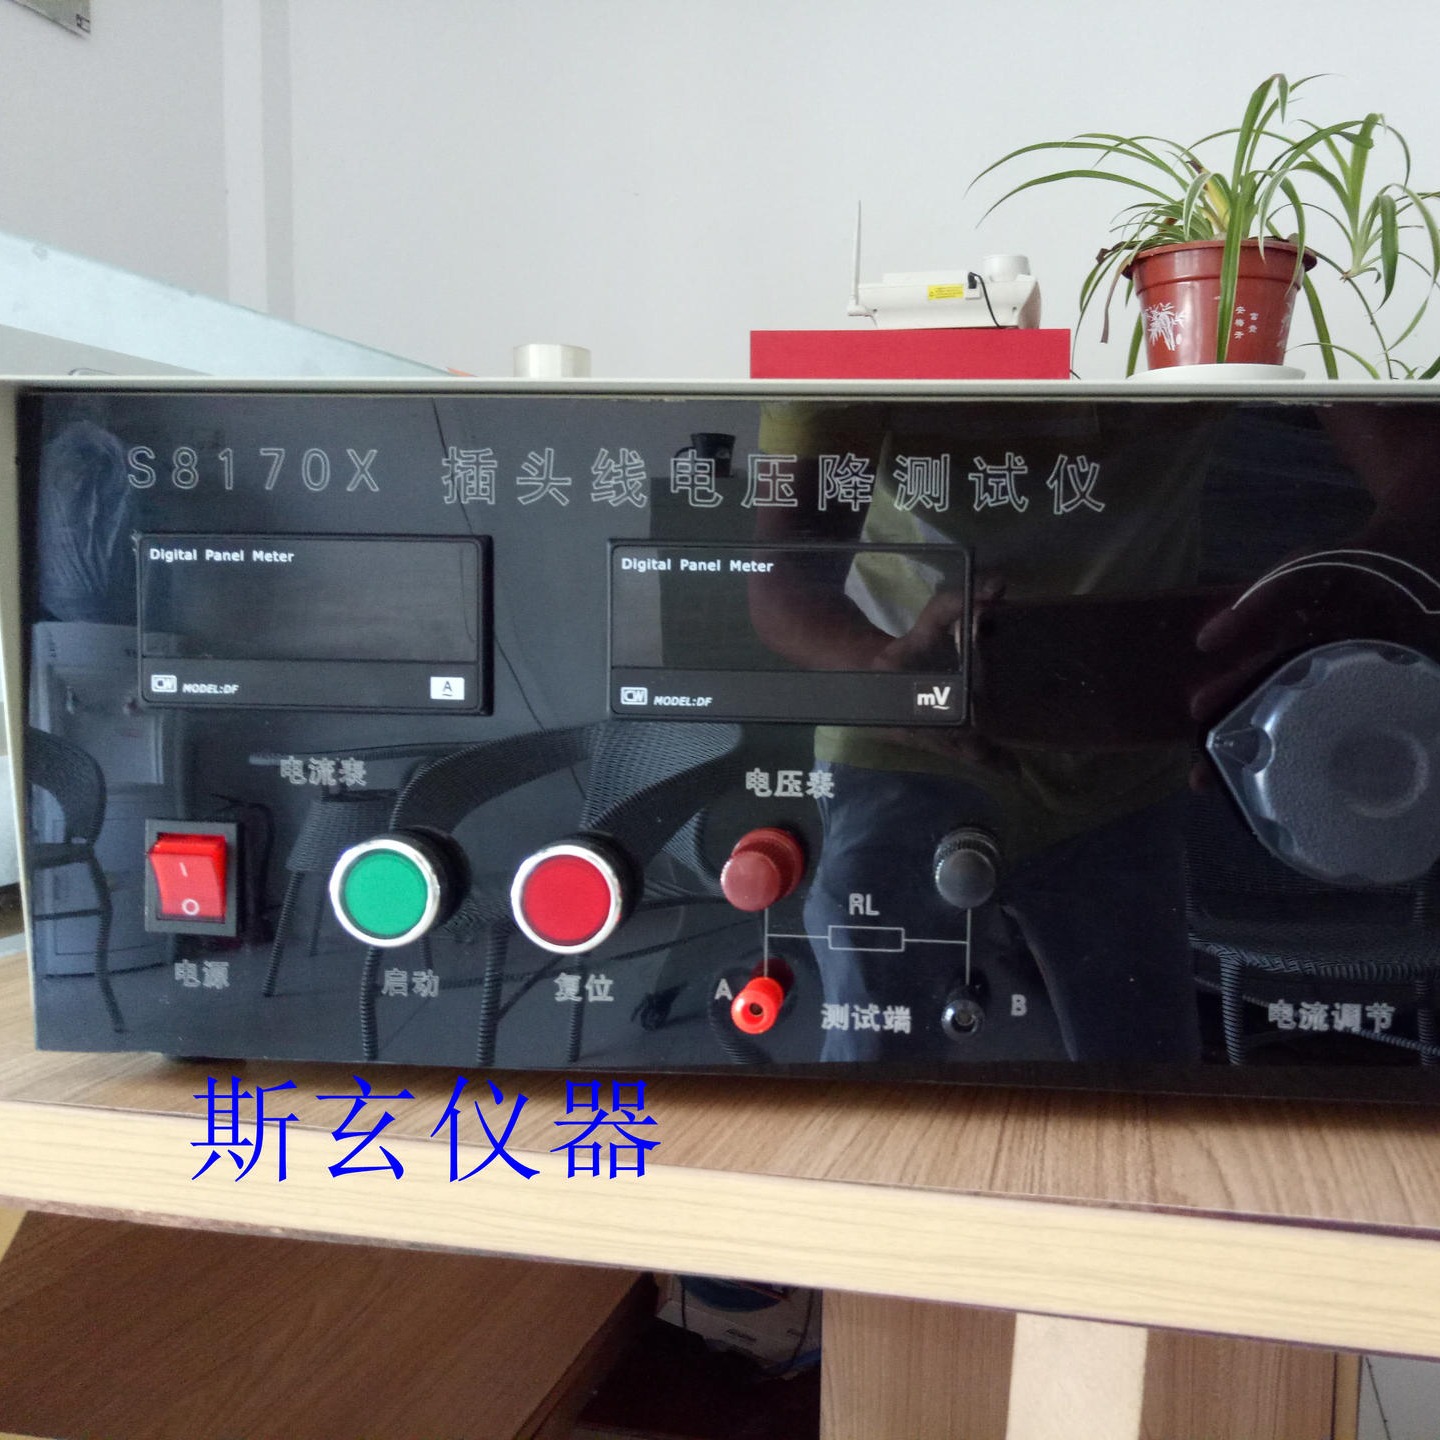 S8170X端子压降测试仪 恒流恒压压降试验仪 上海斯玄厂家现货